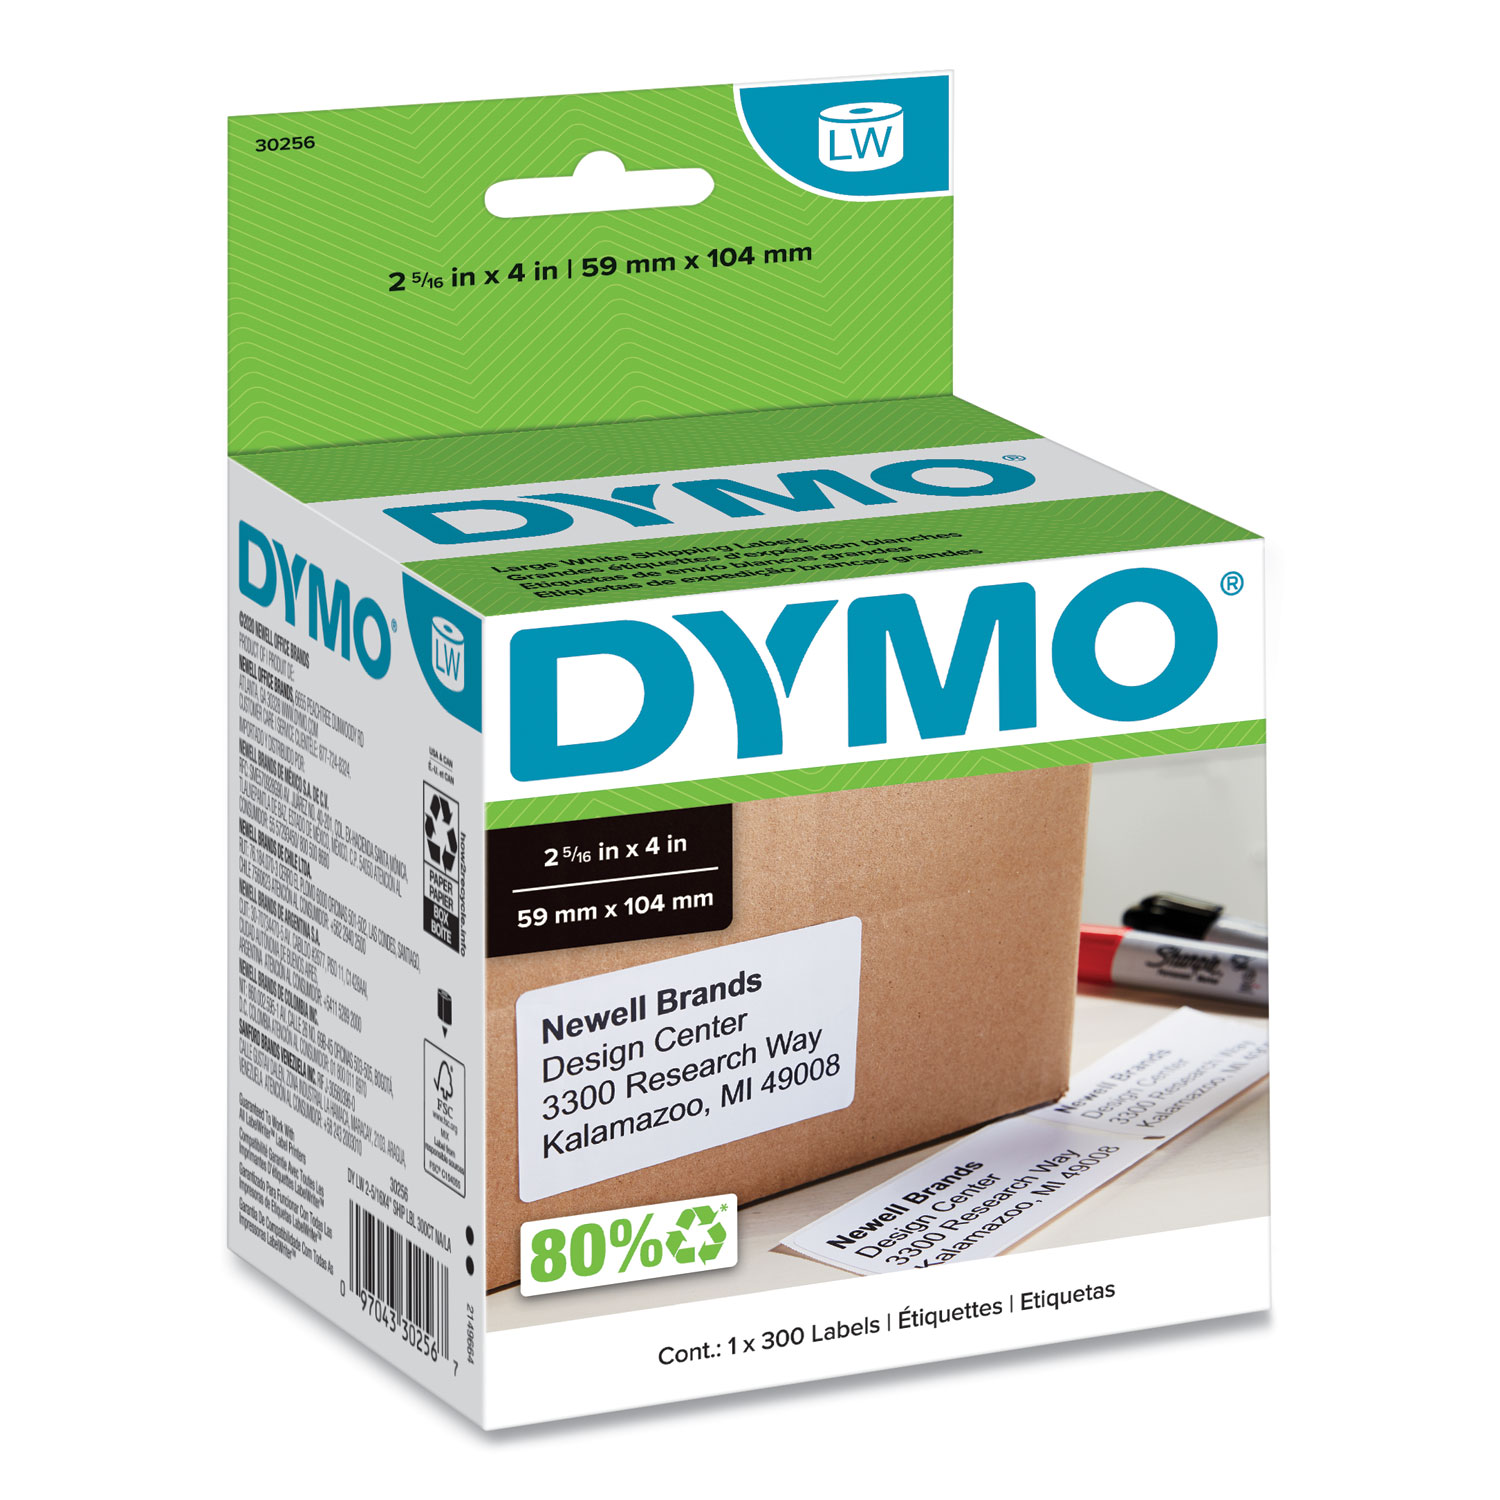 Dymo LabelWriter 450 Direct Thermal Printer Monochrome Label Print 51 lpm Mono USB - 2